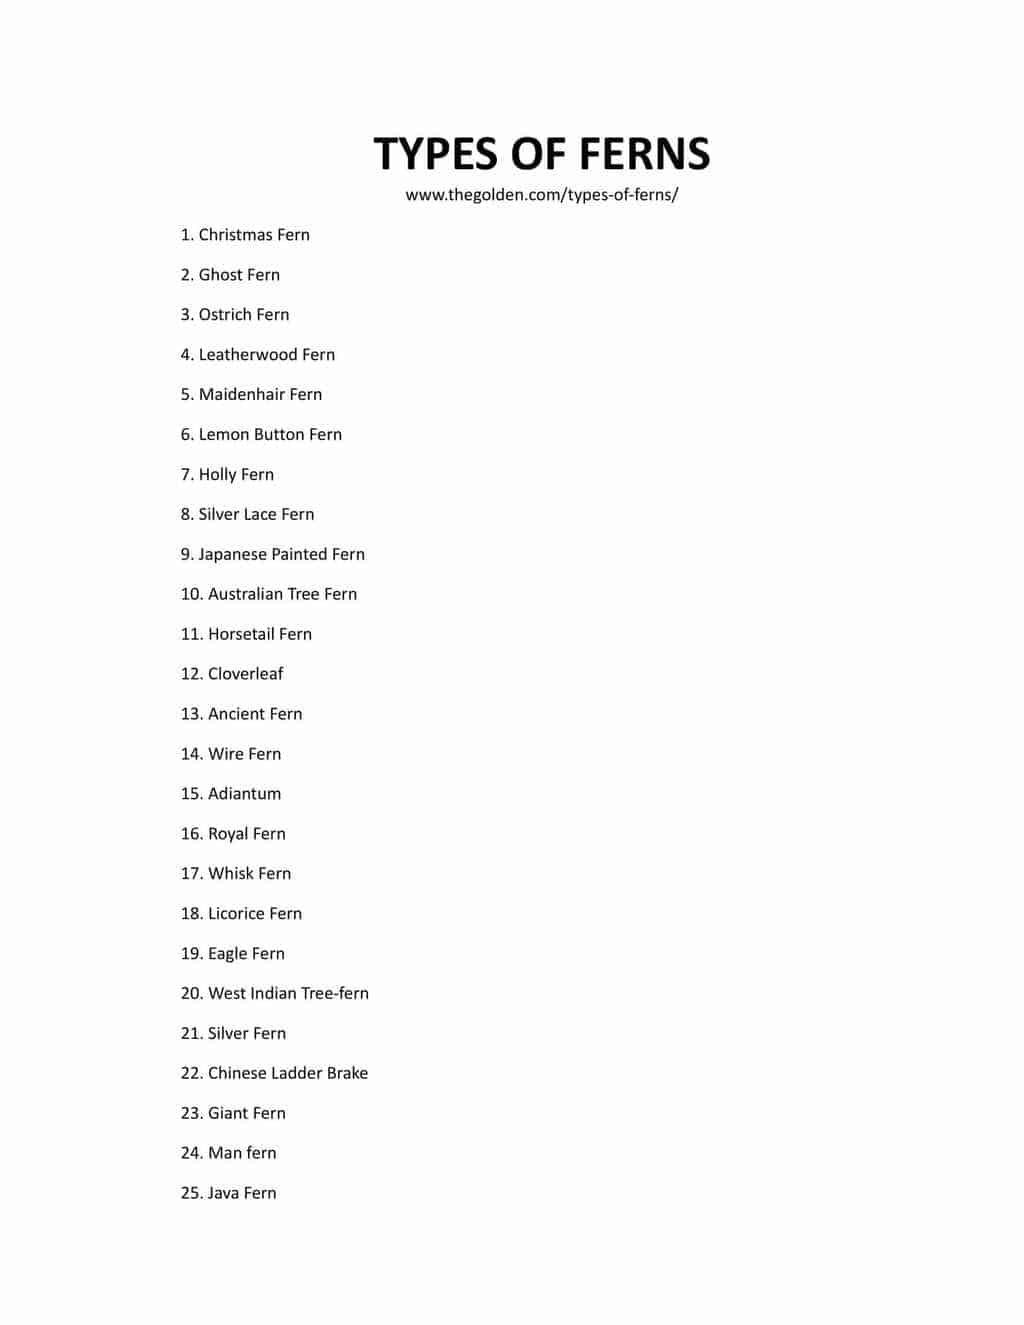 Downloadable list of fern varieties